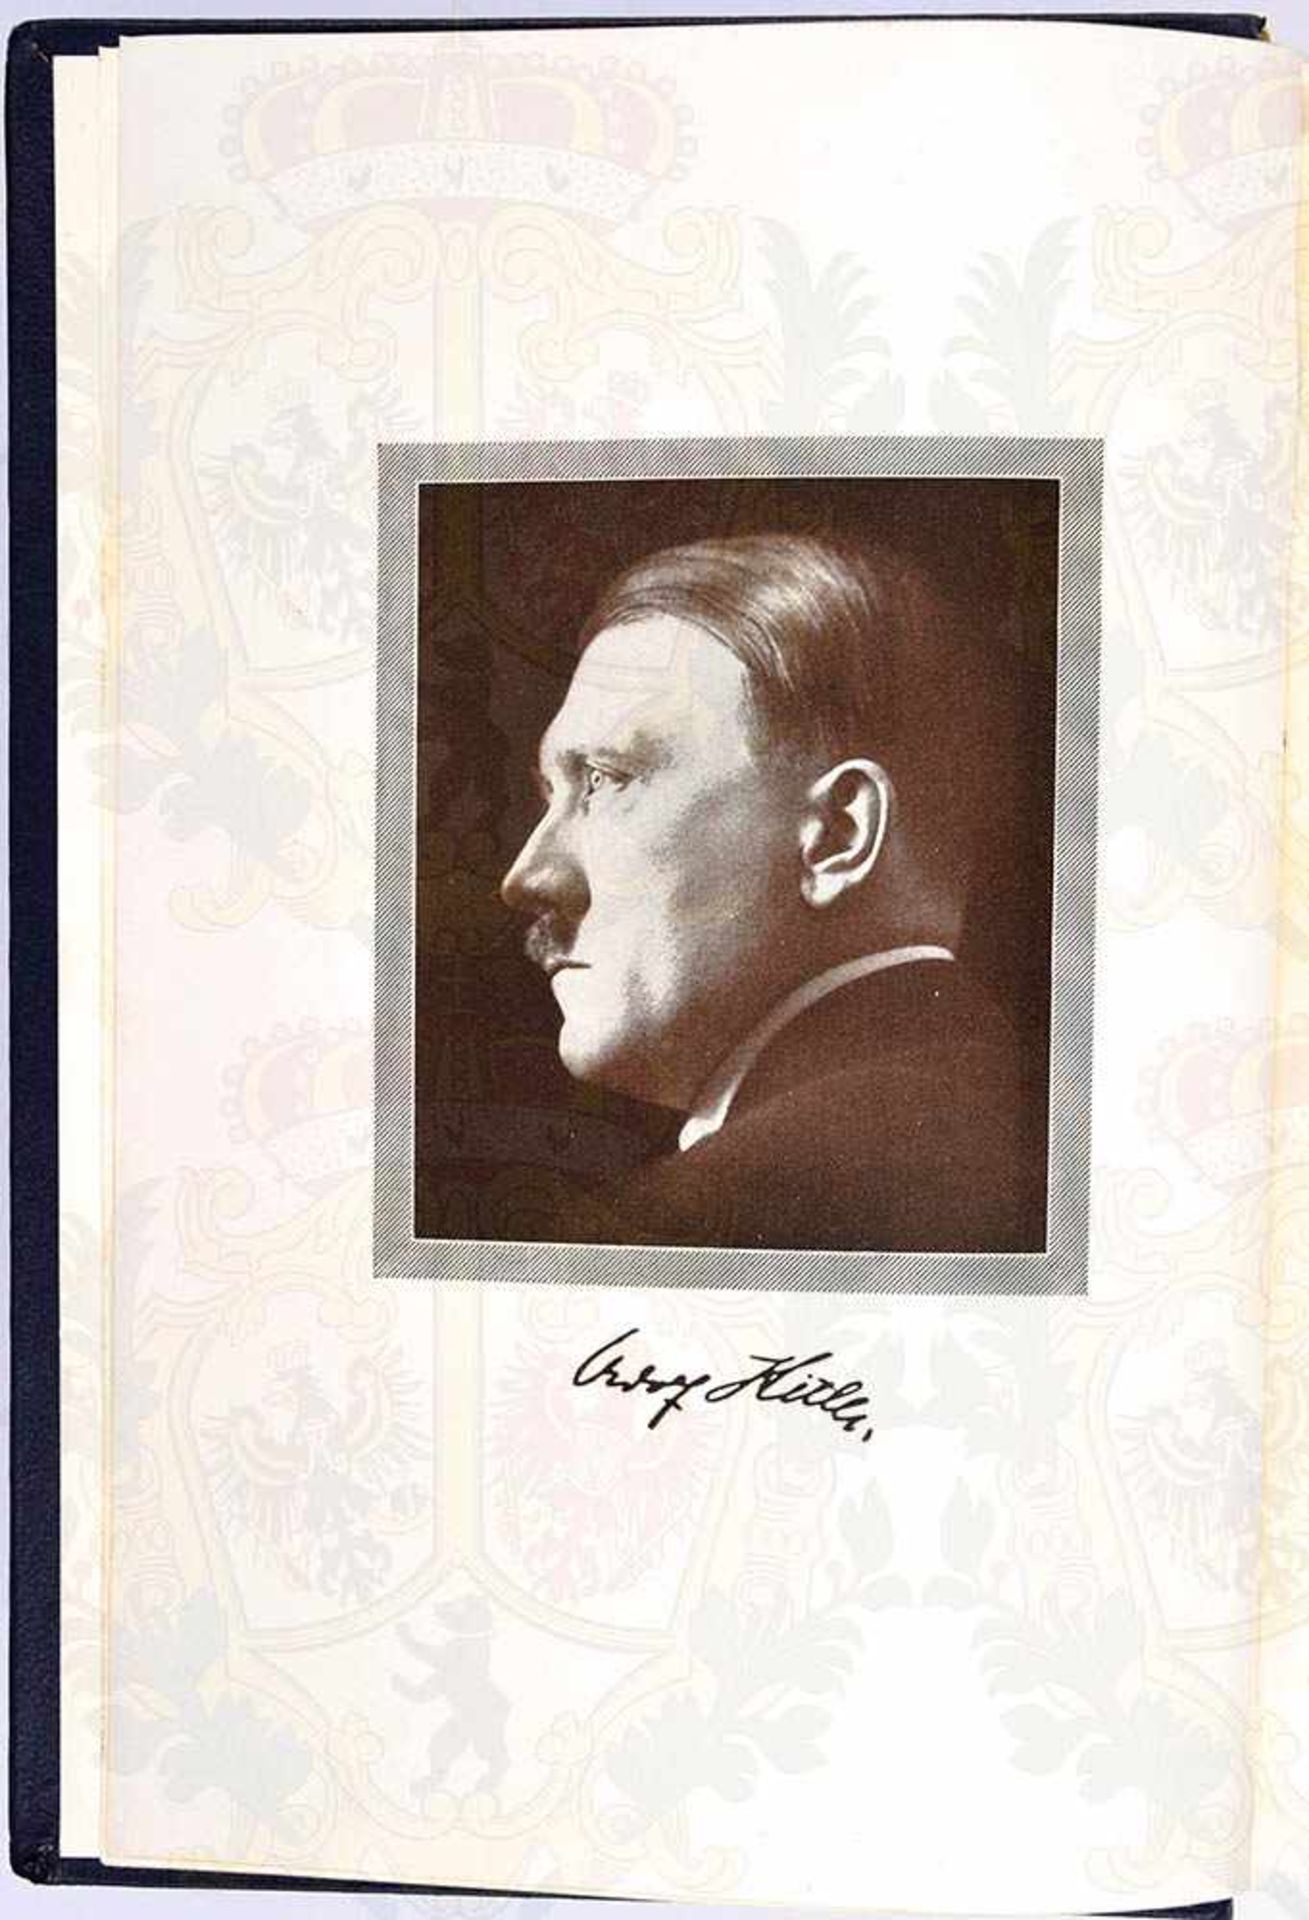 MEIN KAMPF, Adolf Hitler, Jubiläums-Ausgabe z. 50. Geburtstag, Eher-V. 1939, 1 Portrait, 705 S. u. - Bild 2 aus 3